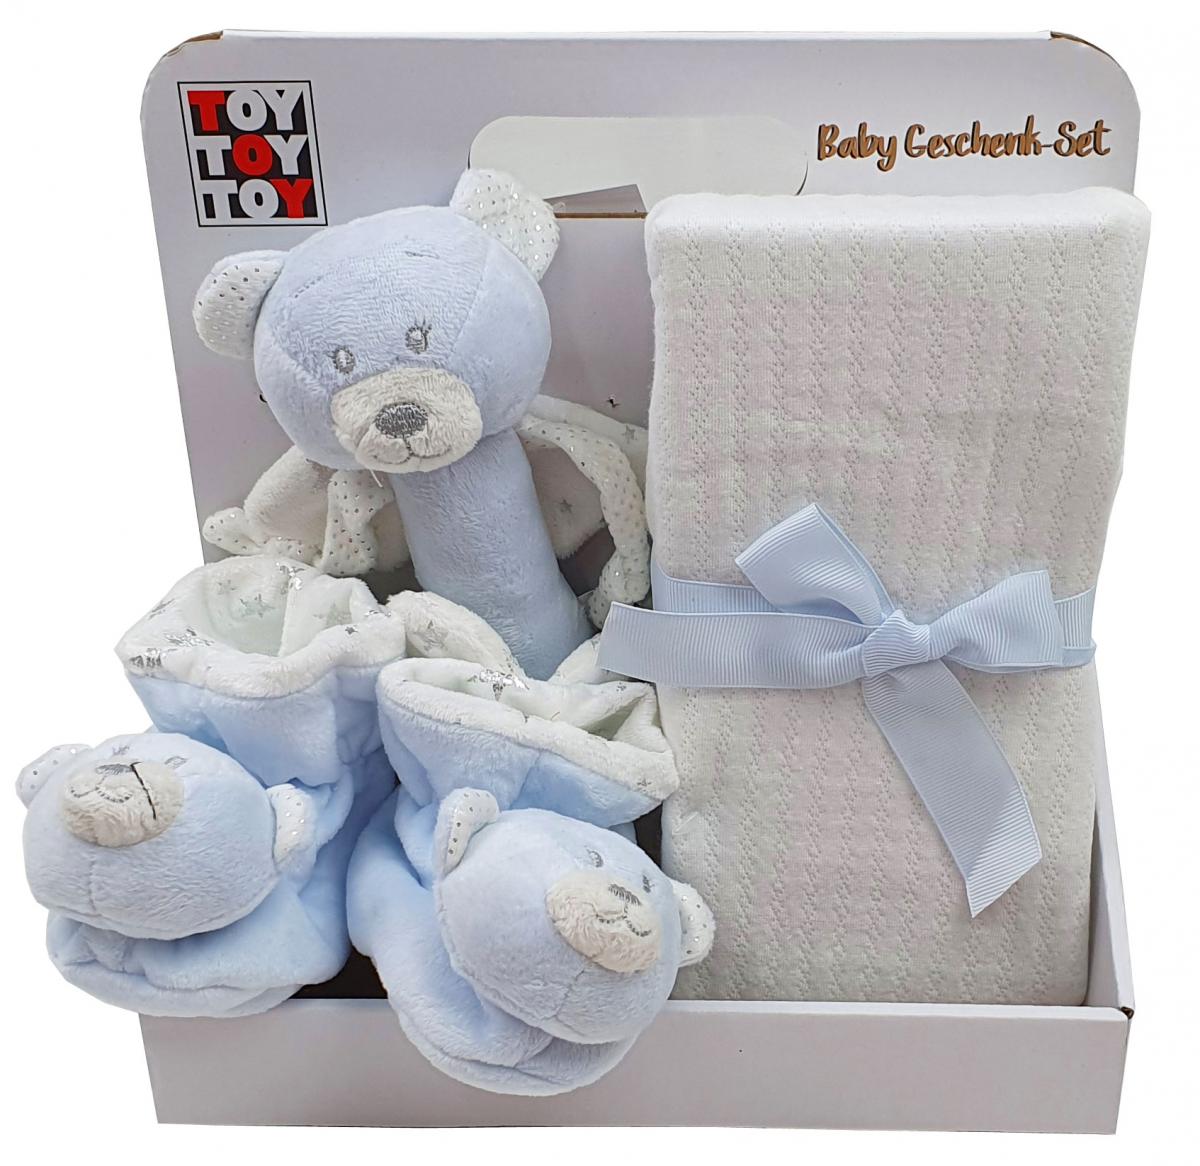 Preissturz » Baby mit Gutes Geschenk Stabrassel günstiger | blau Rasselschuhe Babydecke Teddybär